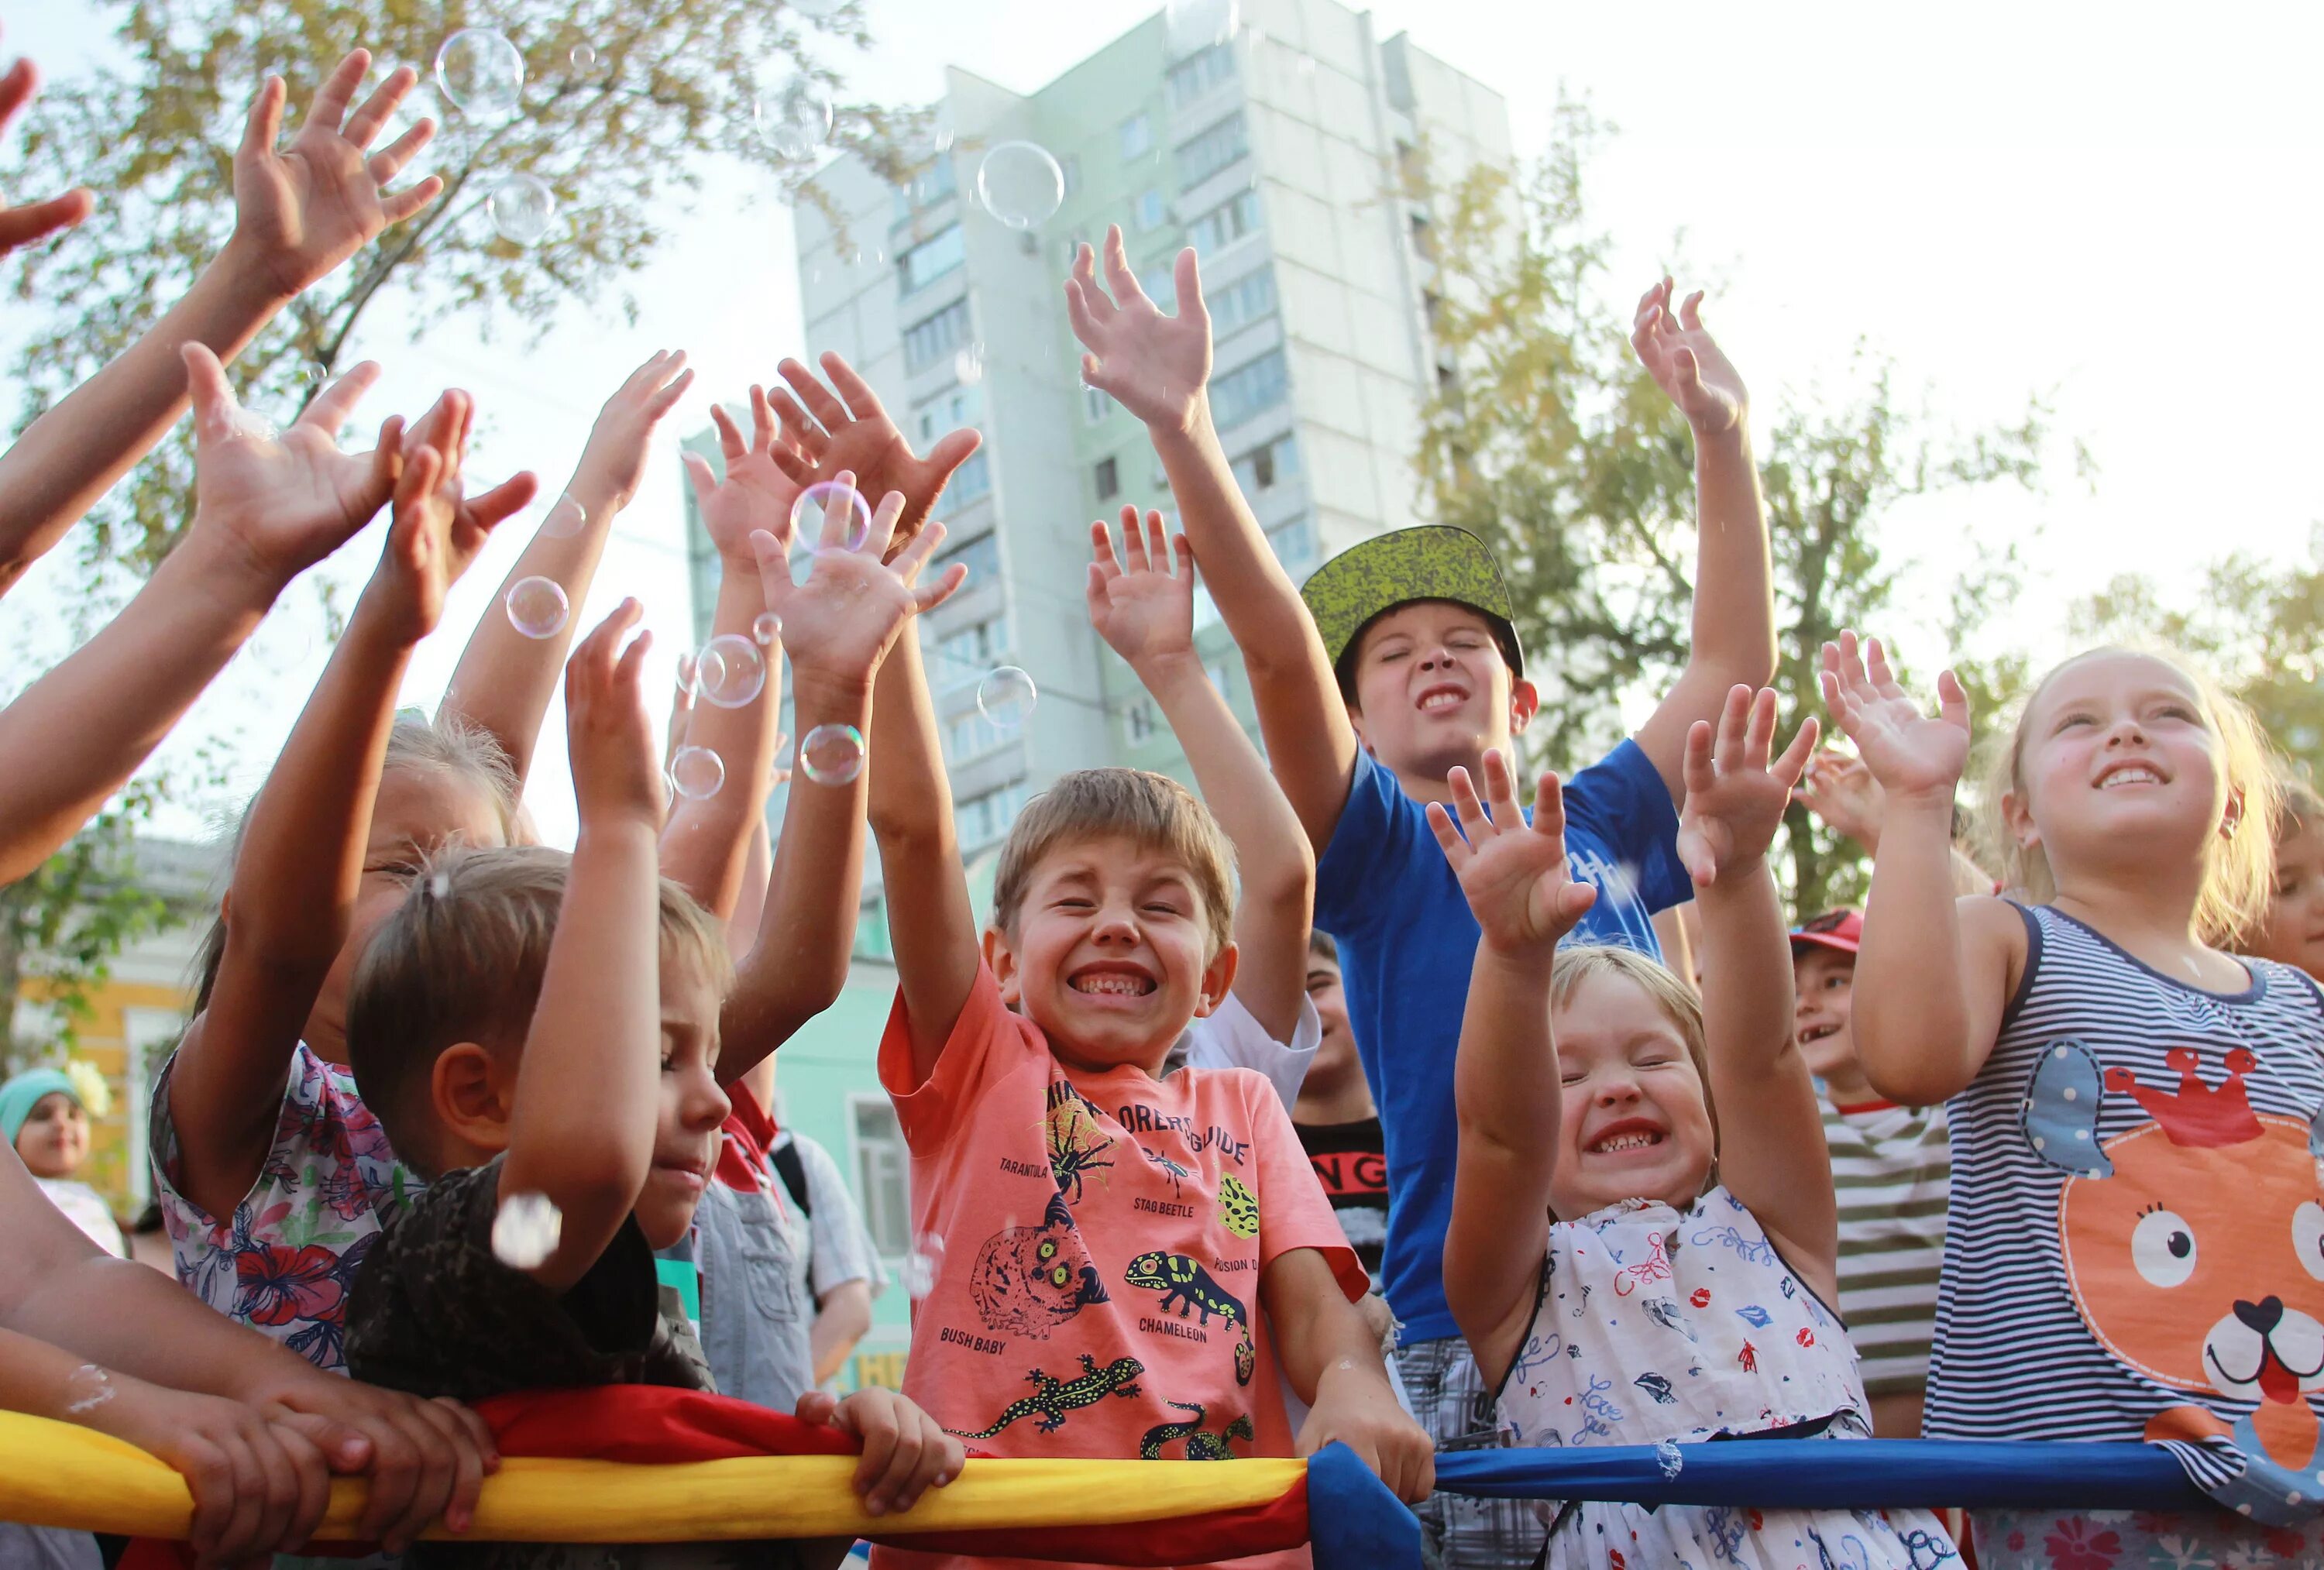 Организовано мероприятие для детей. Массовые мероприятия с детьми. Праздник день защиты детей в России. Мероприятия для детей. Культурно-развлекательные мероприятия.